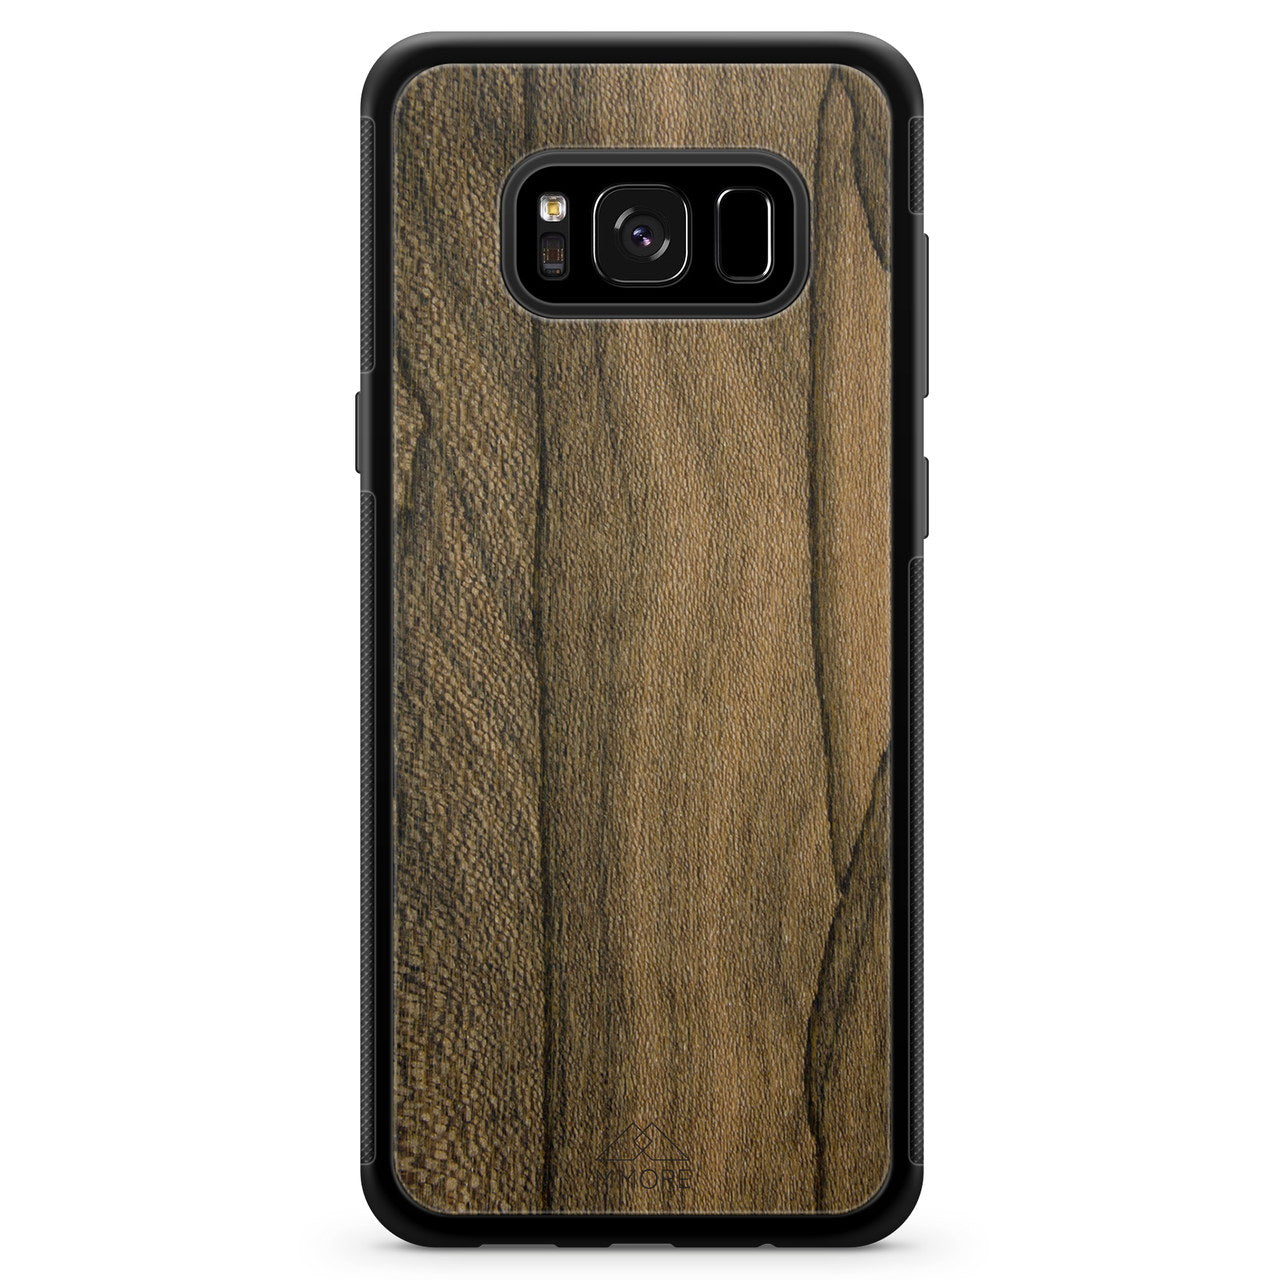 Custodia per cellulare Samsung S8 in legno Ziricote